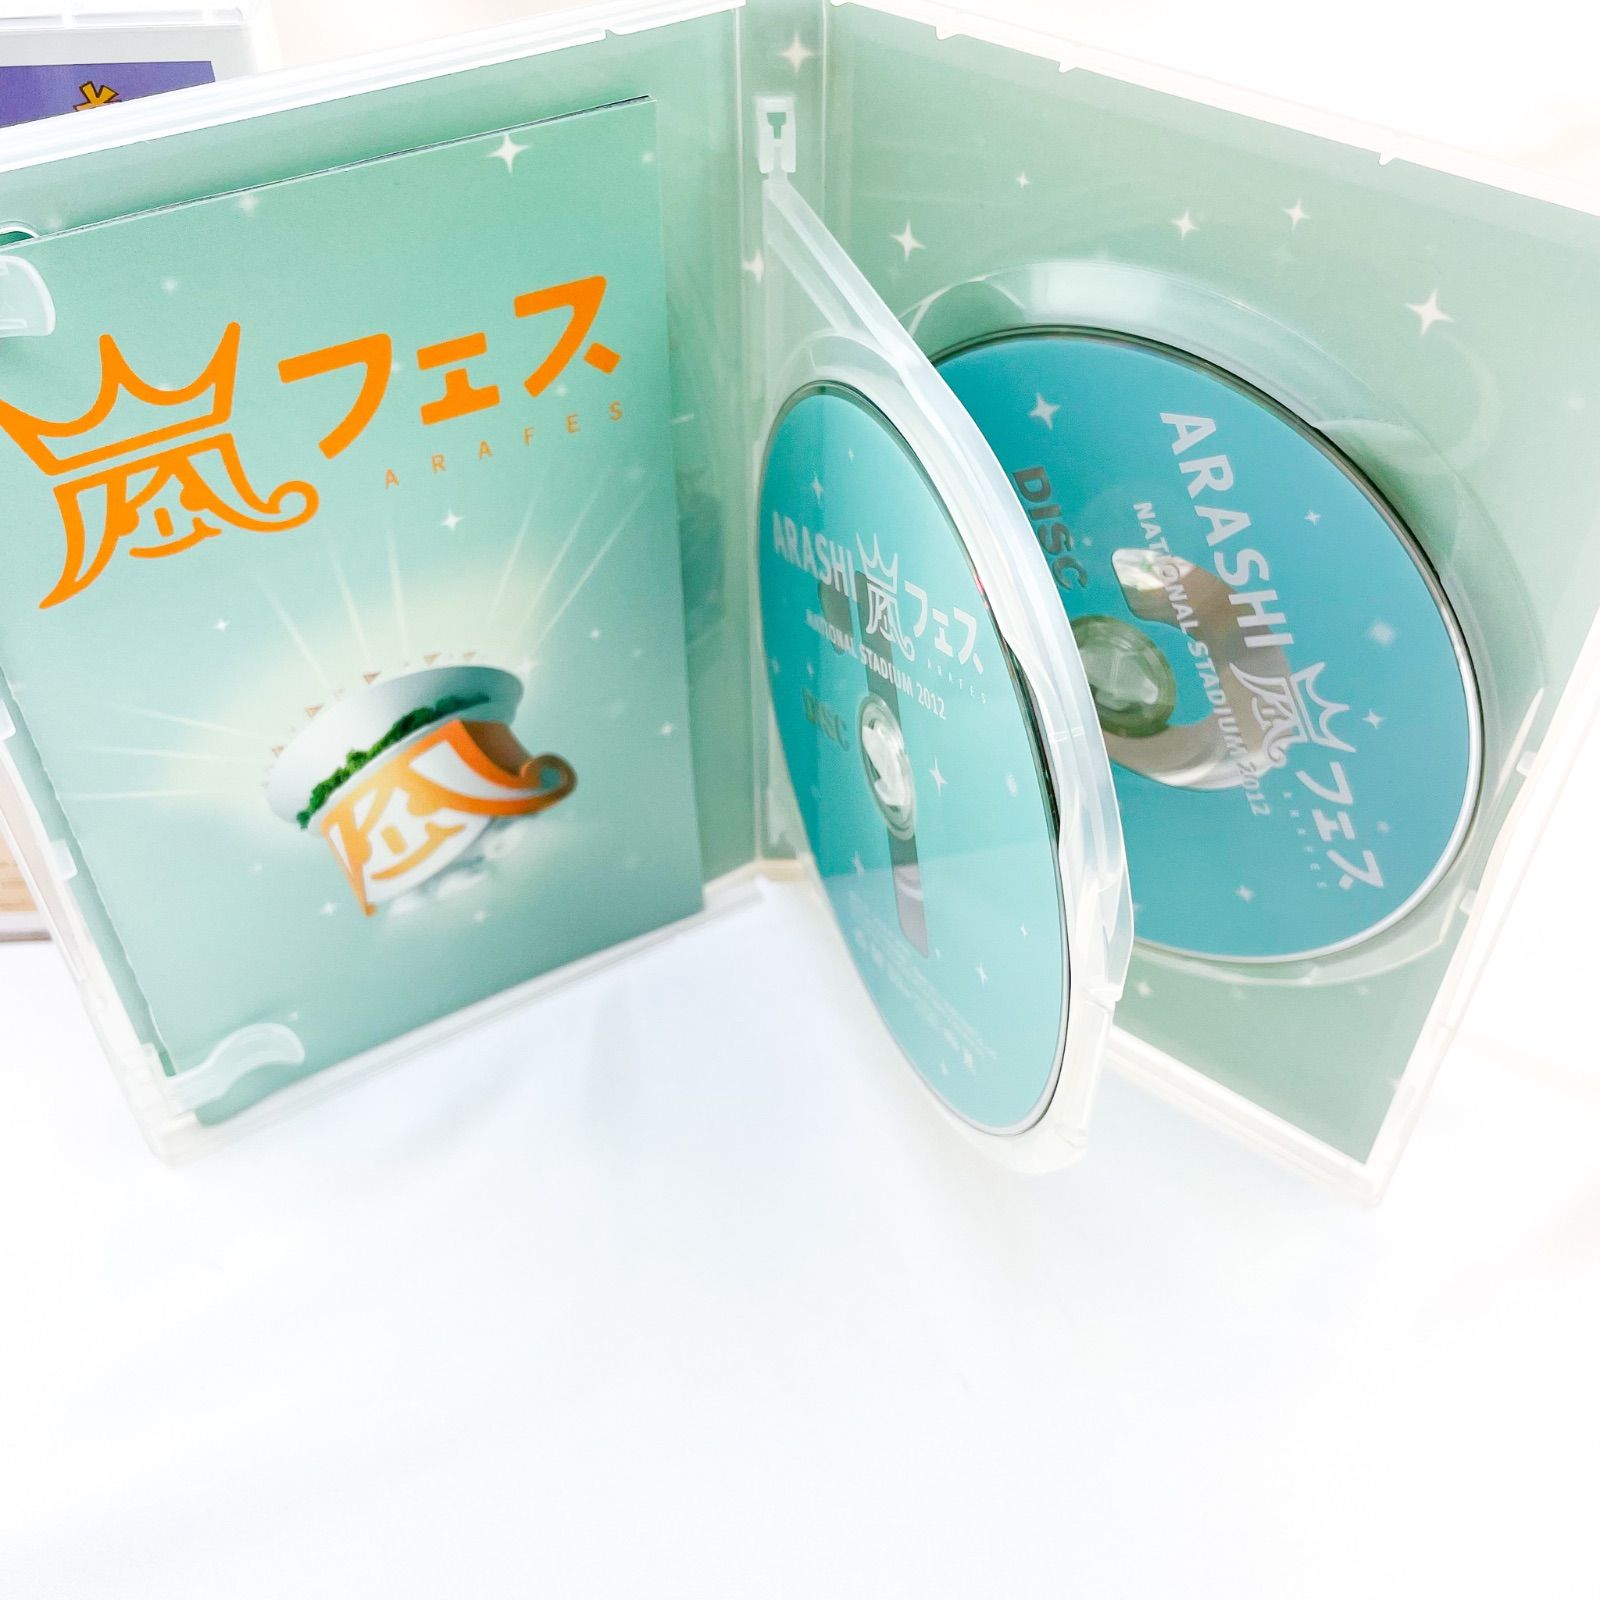 嵐 アラフェス 2012 2013 DVD 通常盤 セット D